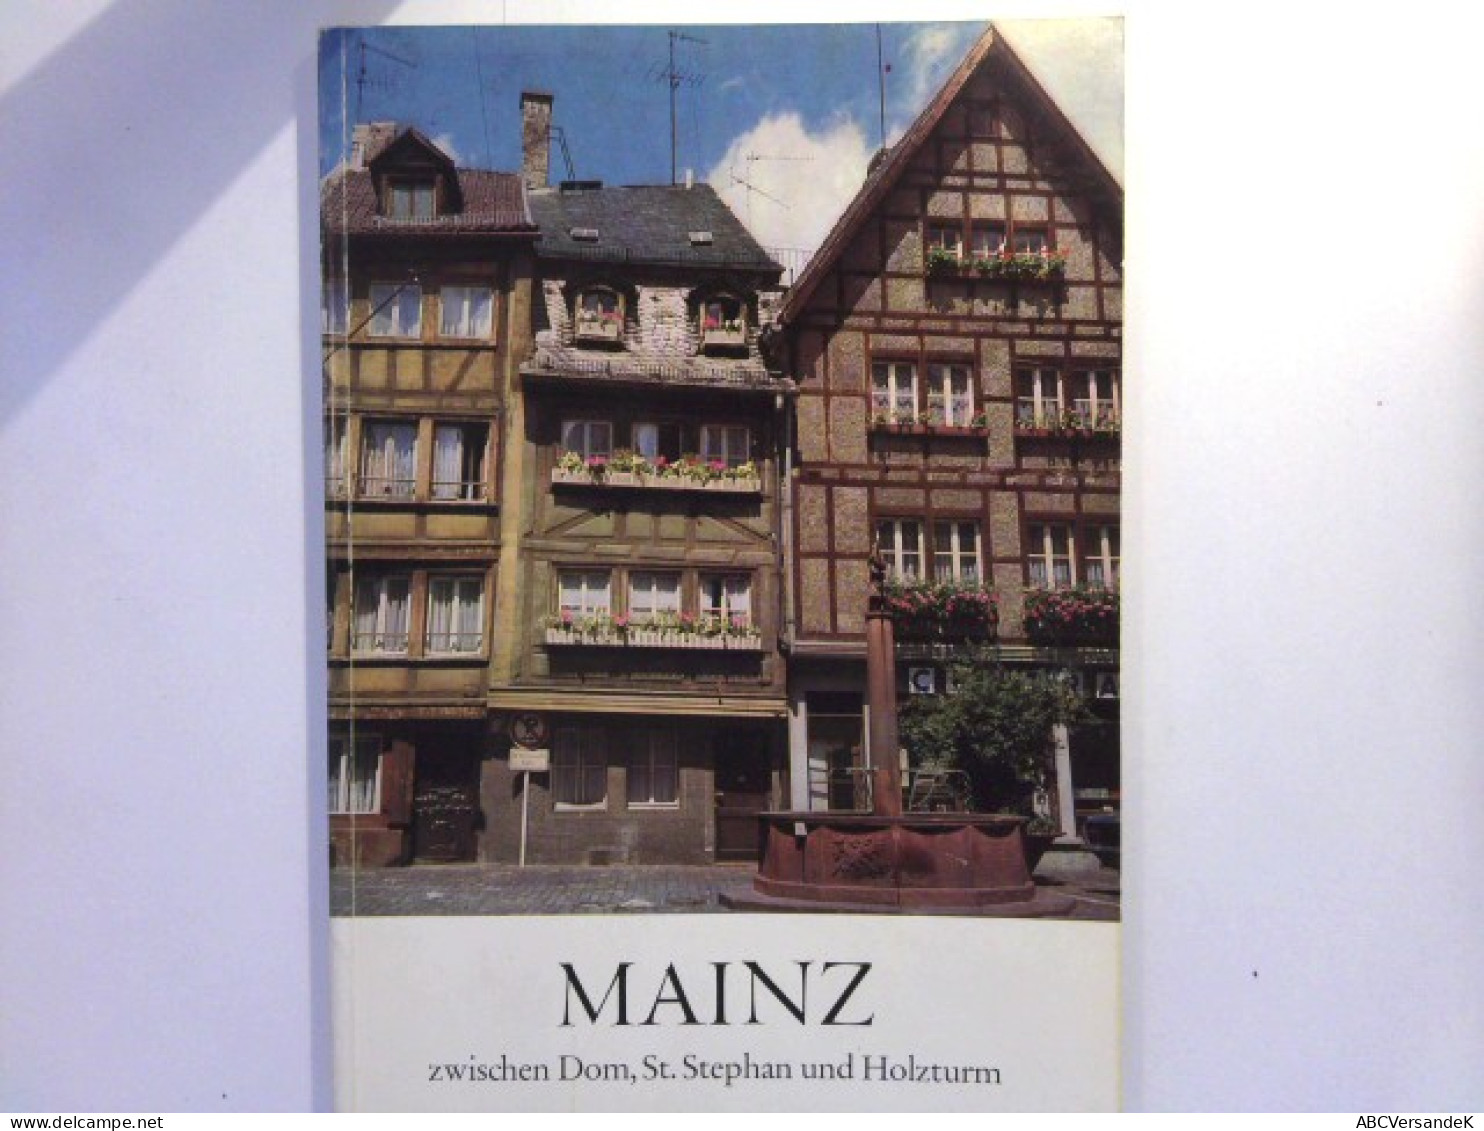 Mainz Zwischen Dom, St. Stephan Und Holzturm - Ein Führer Durch Die Mainzer Altstadt - Germany (general)